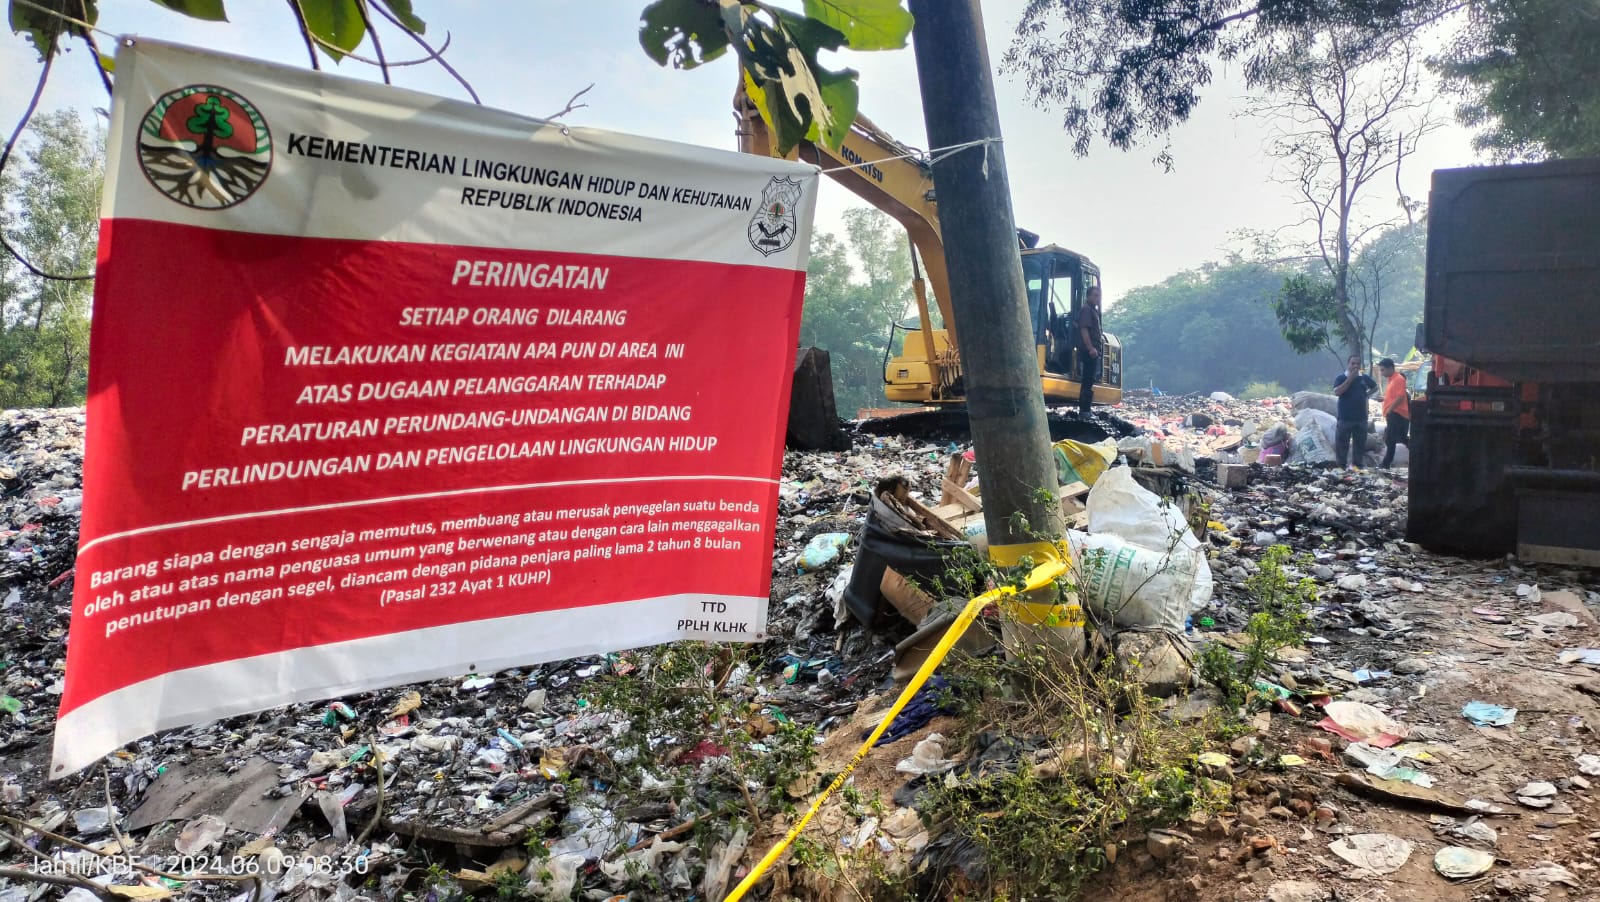 KLHK Tutup dan Segel Tempat Pembuangan Sampah ilegal di Kampung Pagadungan Serang Baru